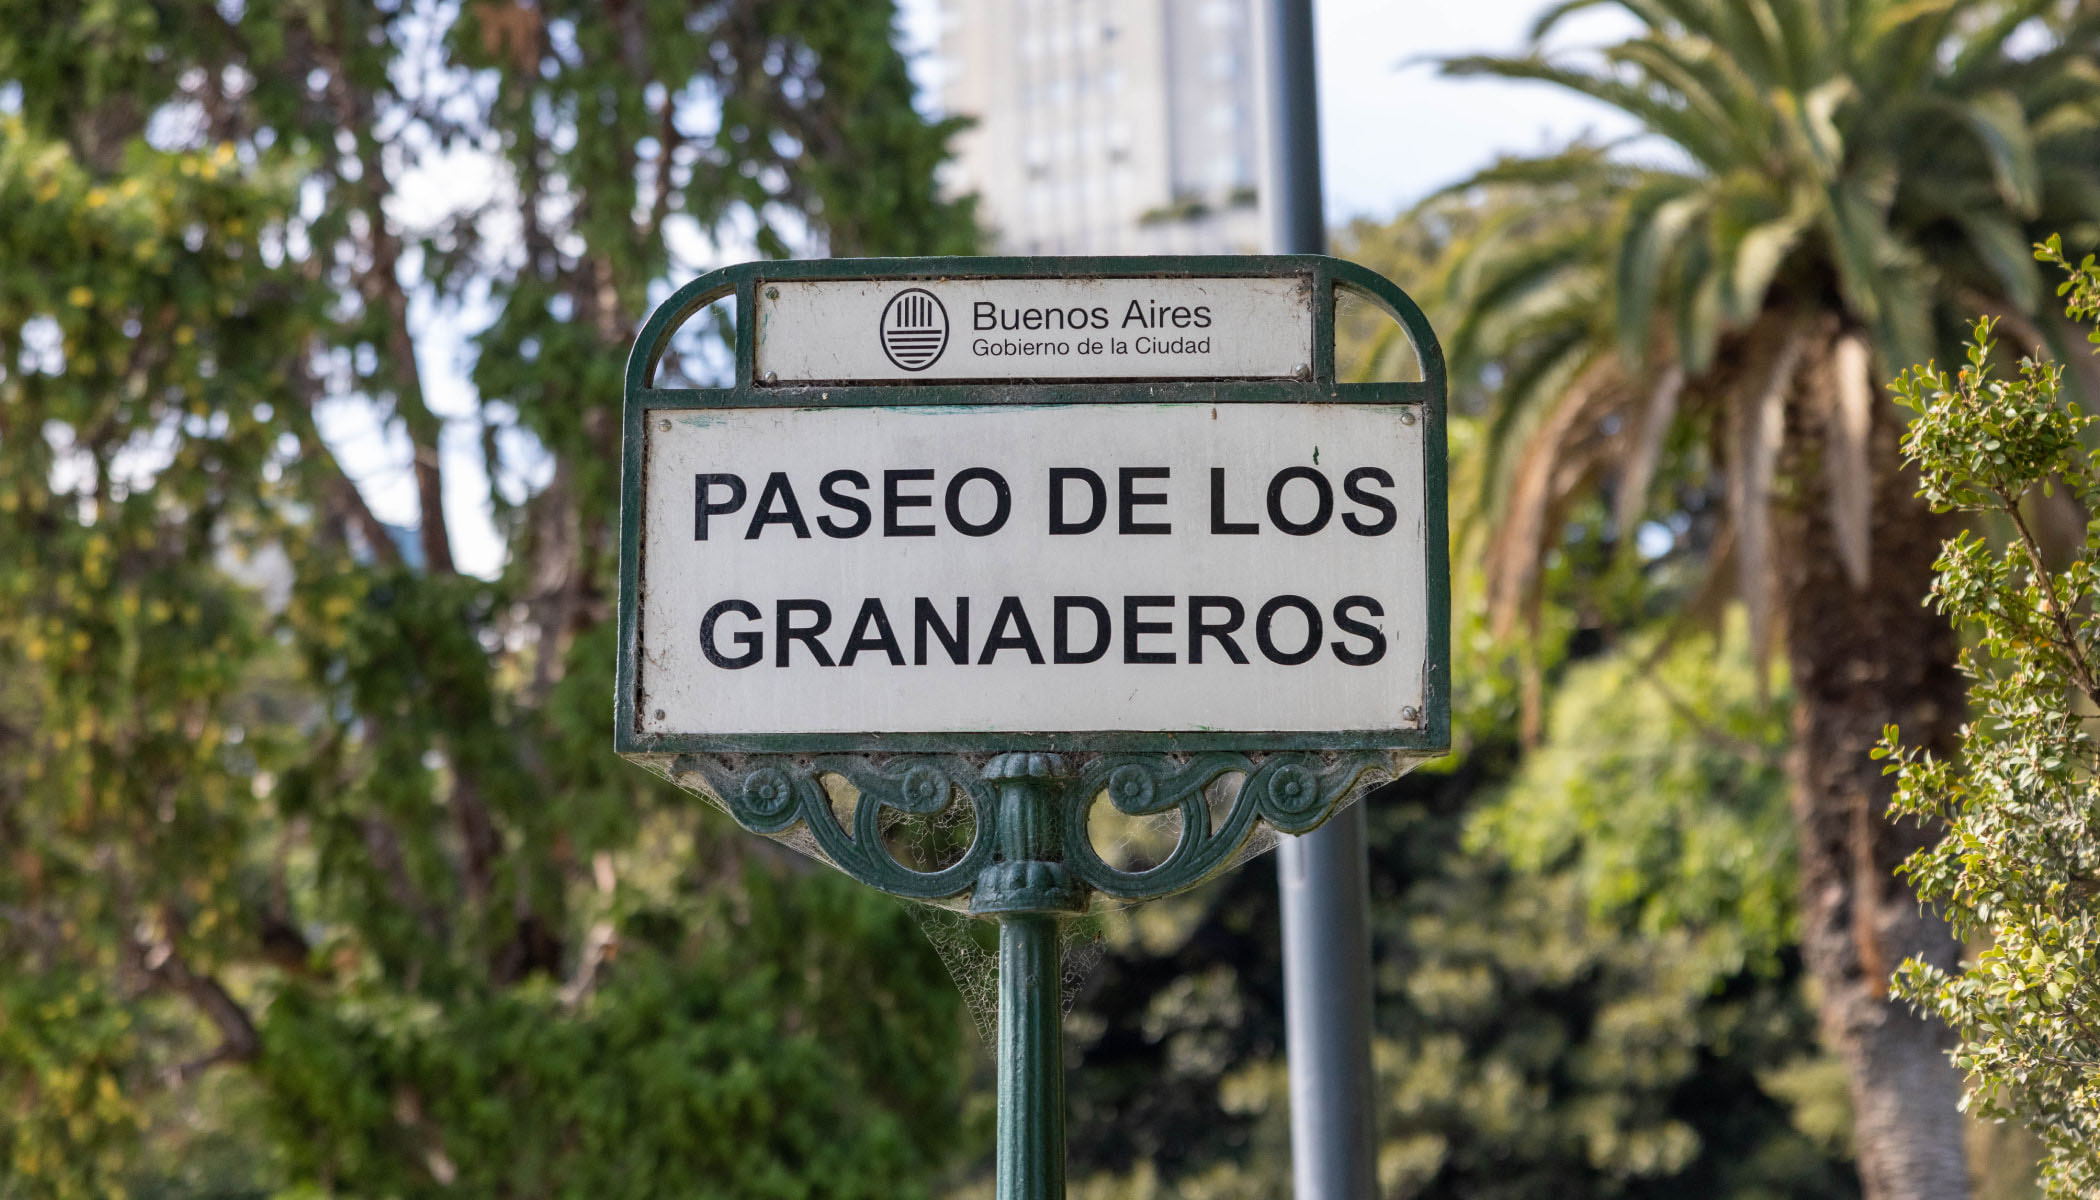 An outdoor sign reads “Paseo de los Granaderos.”